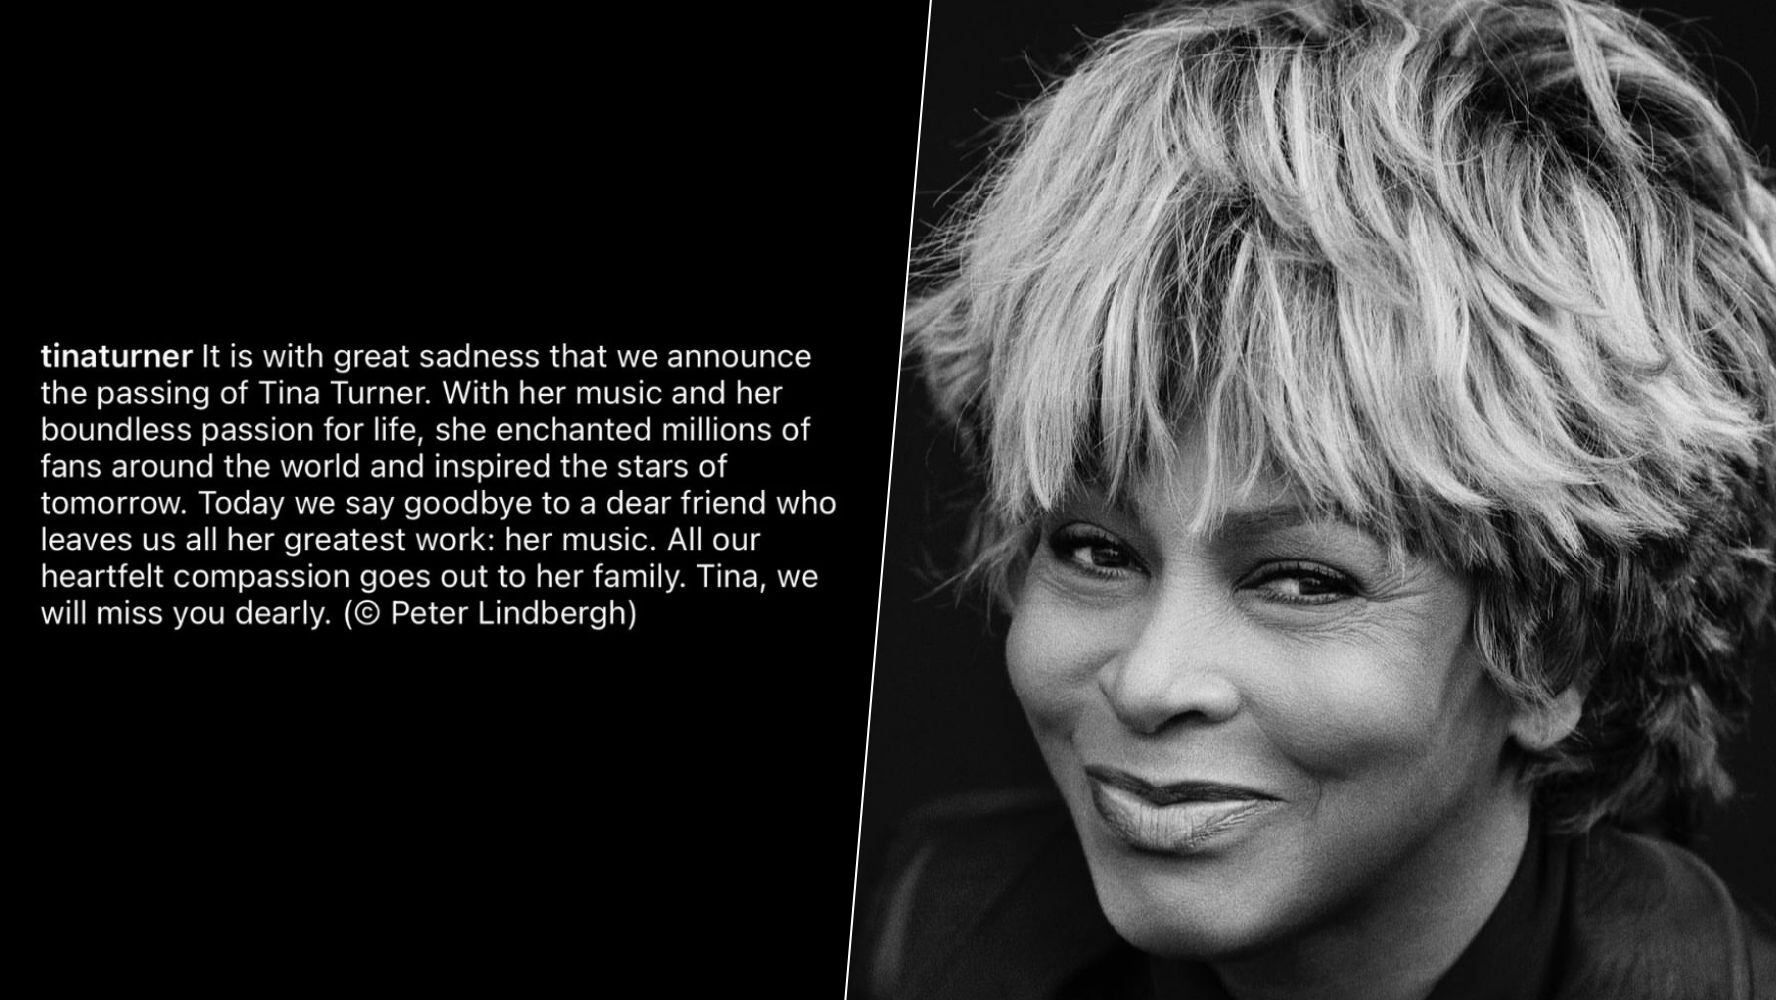 Las redes sociales de Tina Turner publicaron un comunicado sobre su muerte. (Foto: Instagram / @tinaturner)